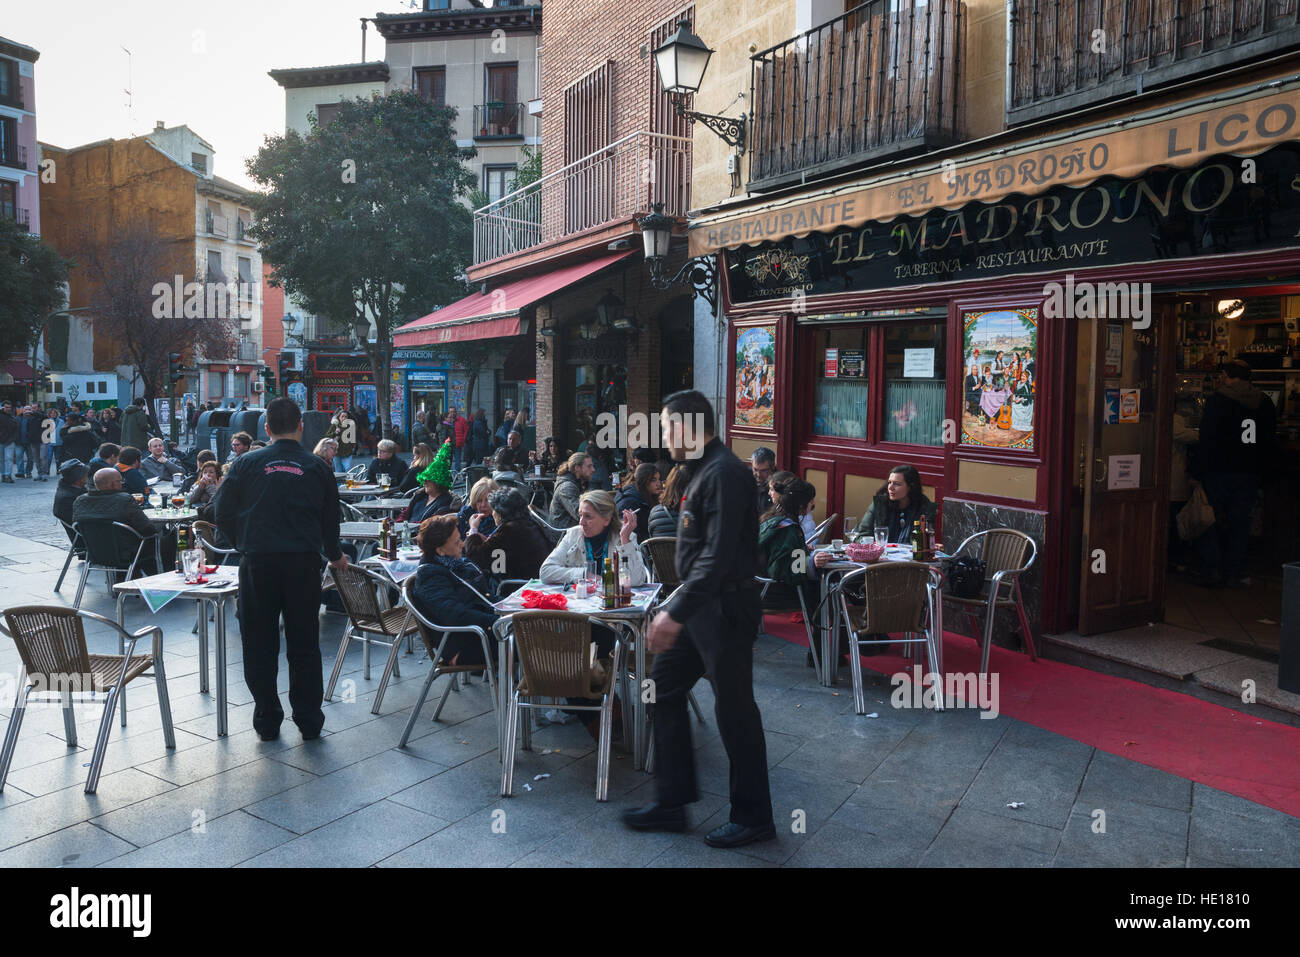 El Madrono ristorante nel centro di Madrid, in Spagna, con posti a sedere esterni. Foto Stock